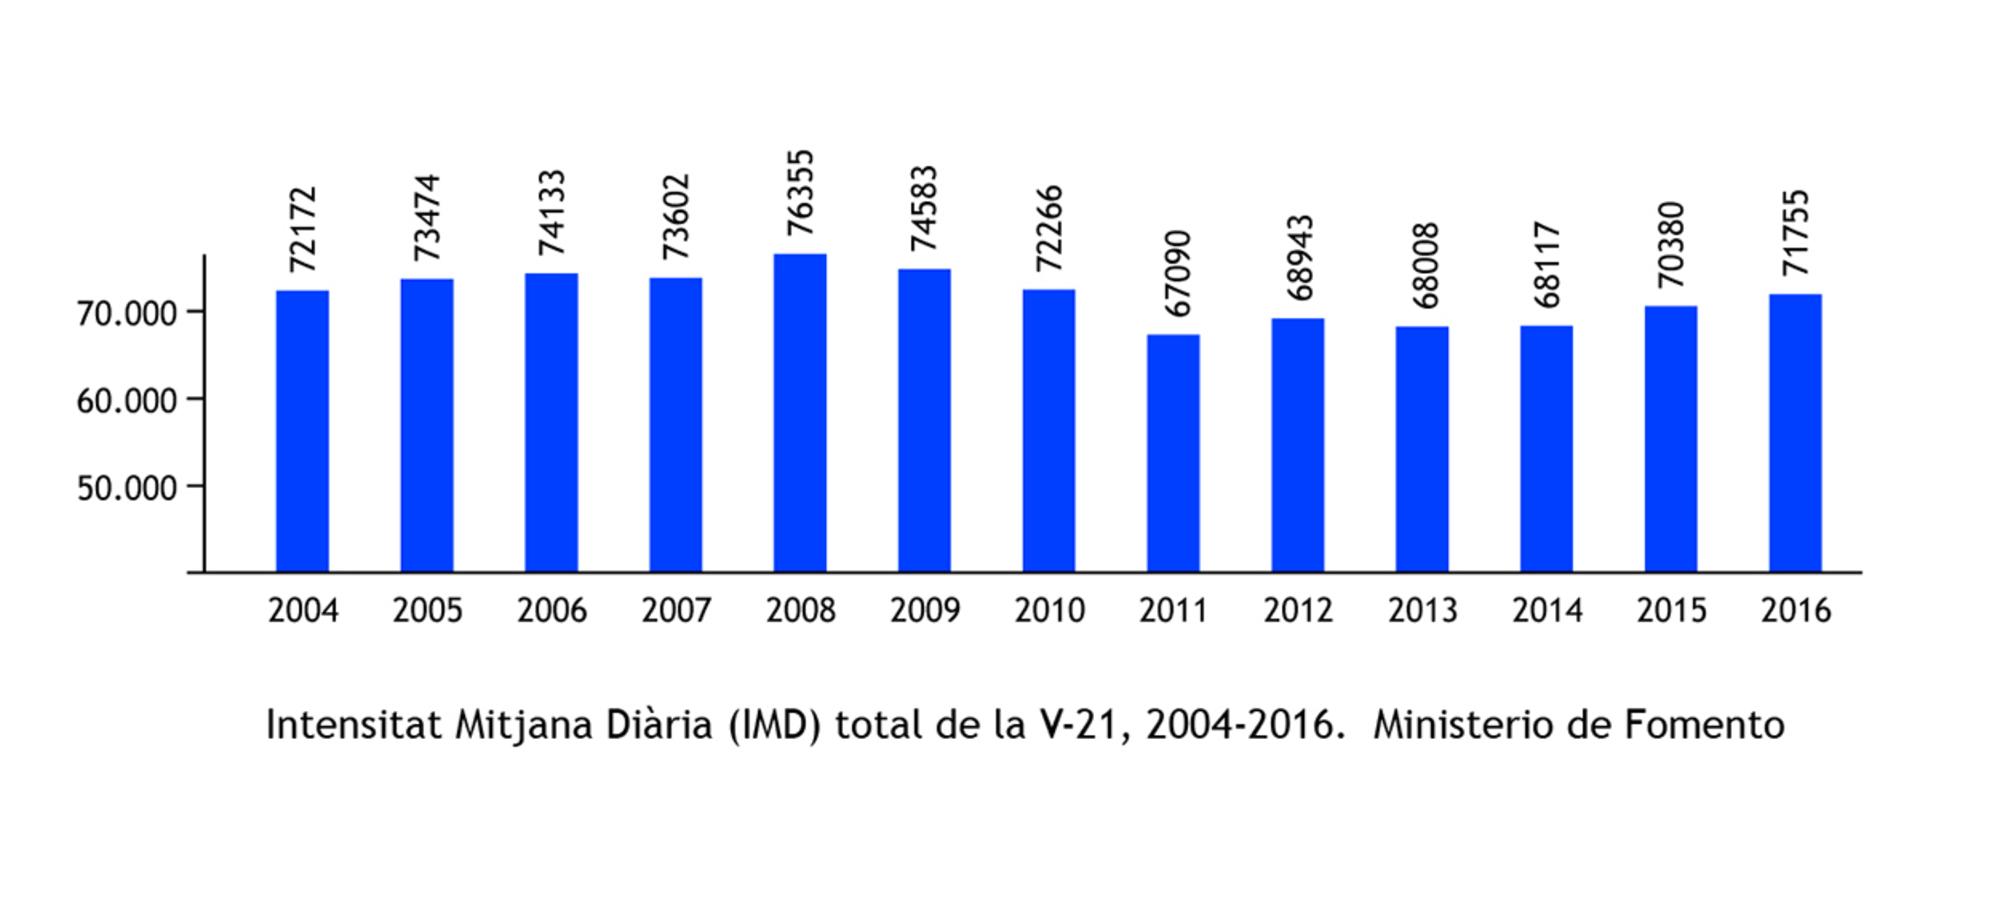 Gráfico con intensidad media diaria (IMD) total de la autovía V-21en el periodo 2004-2016